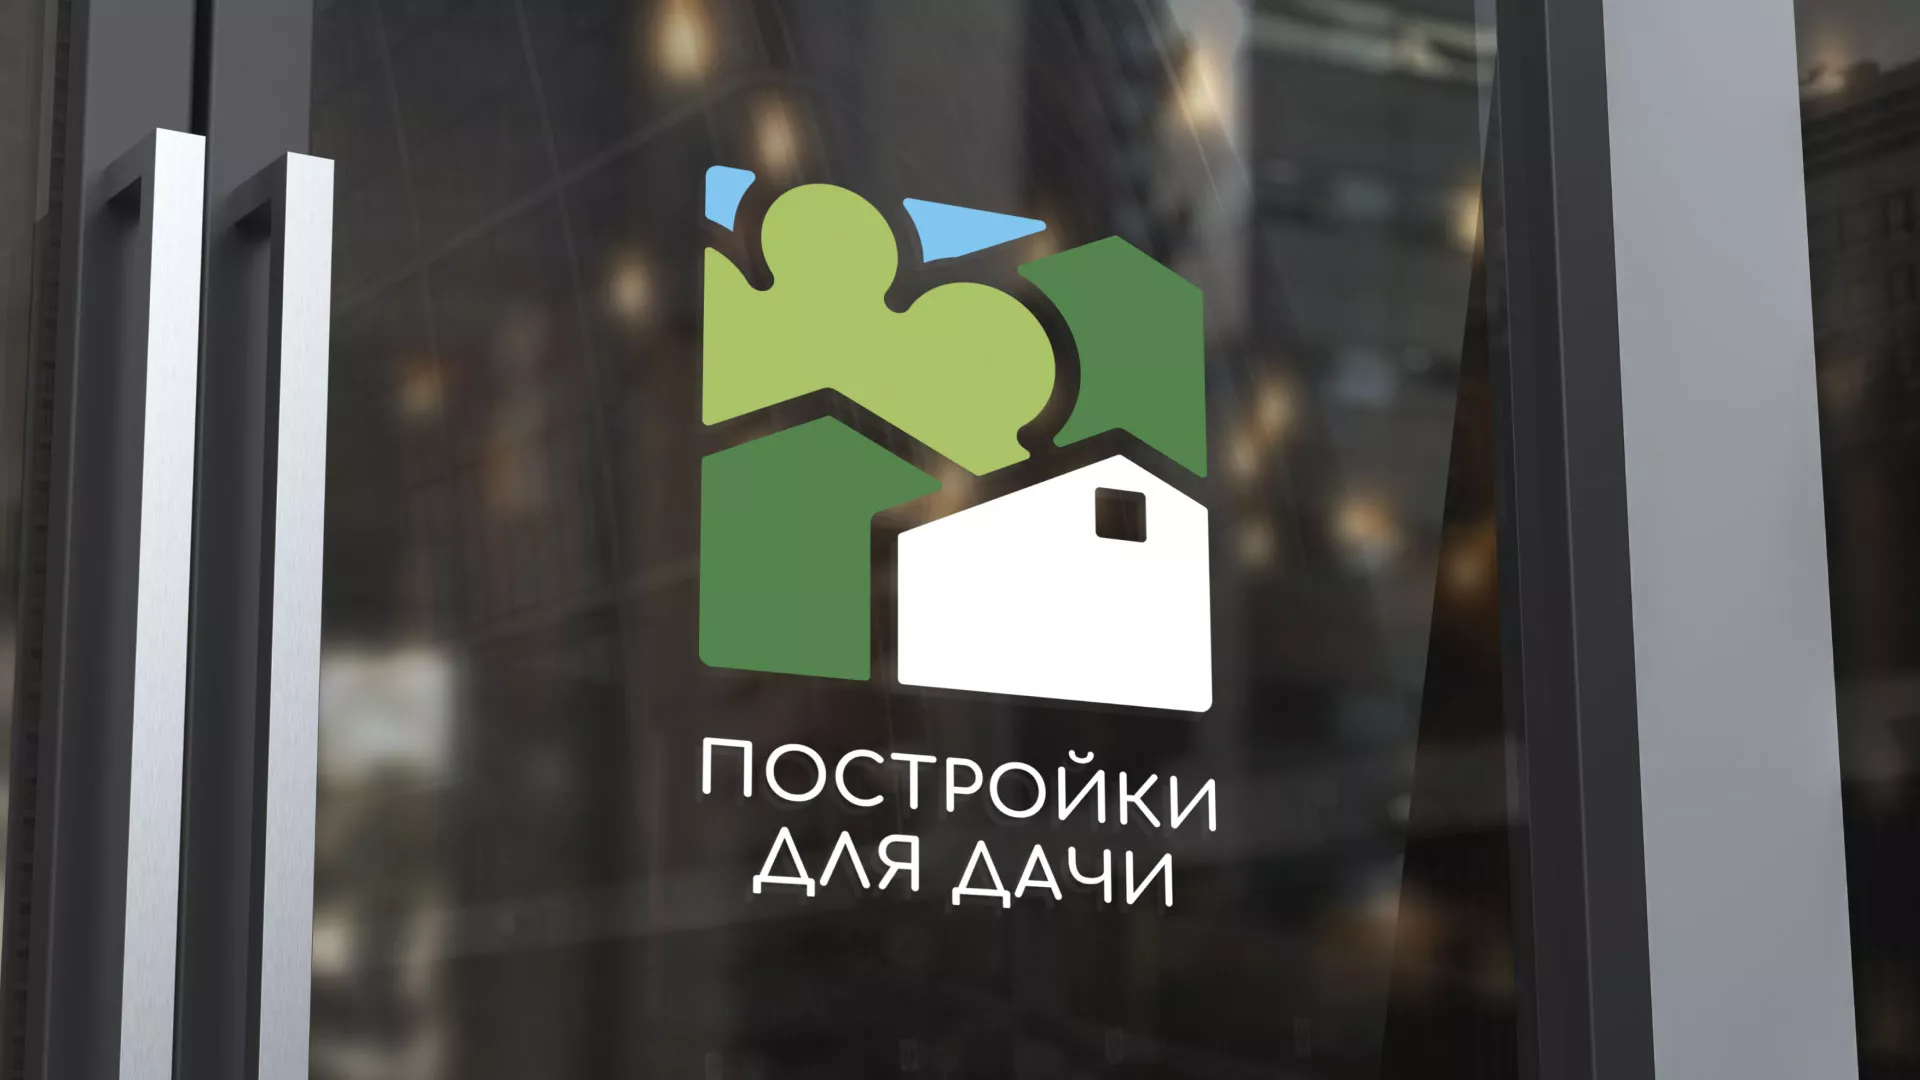 Разработка логотипа в Давлеканово для компании «Постройки для дачи»